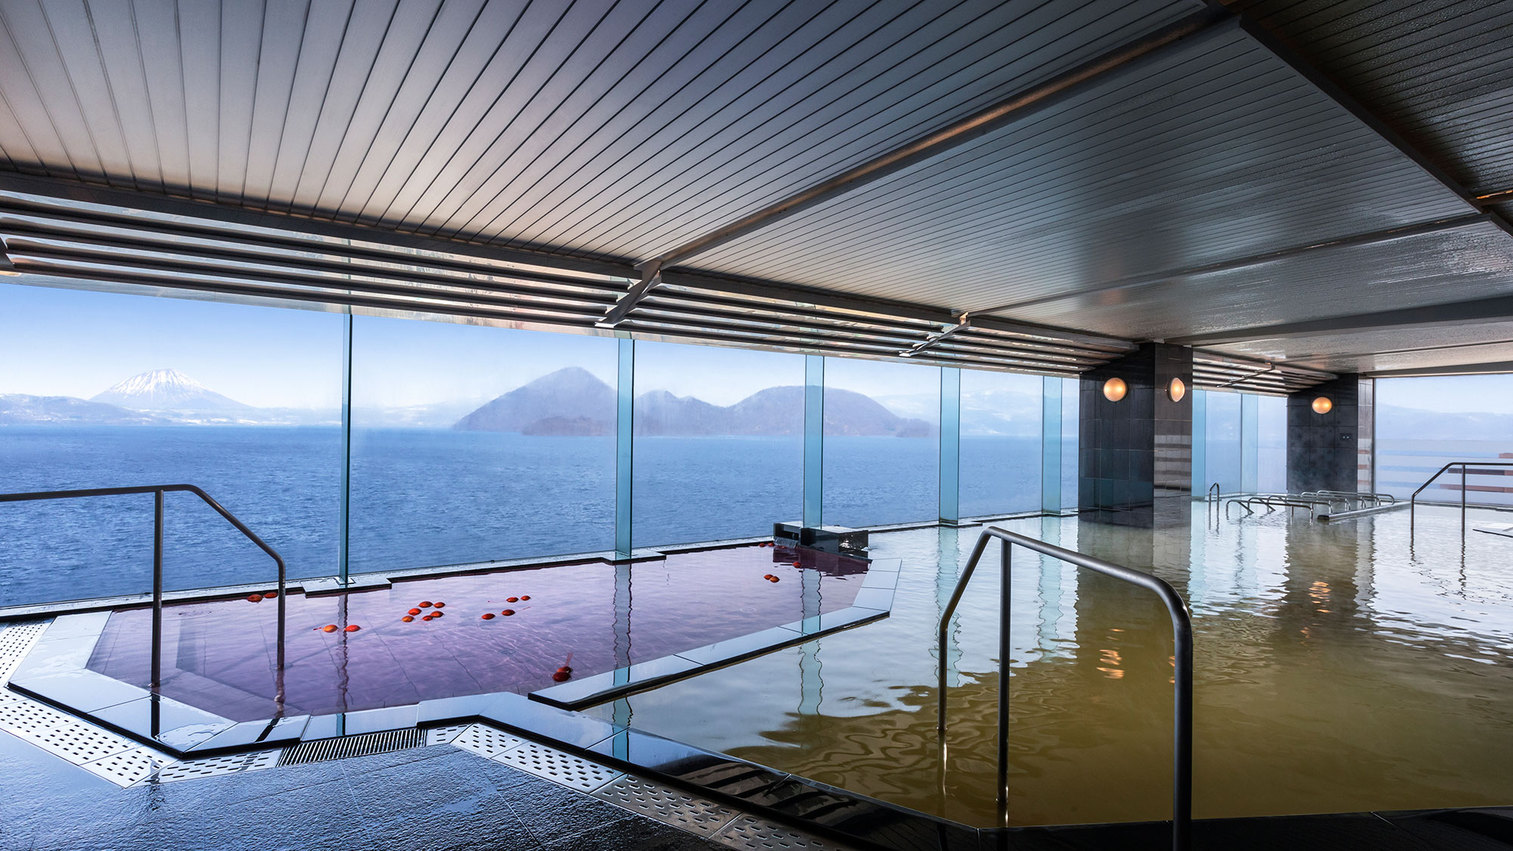 【大浴場】中島、羊蹄山、洞爺湖を一望できる絶景の大浴場